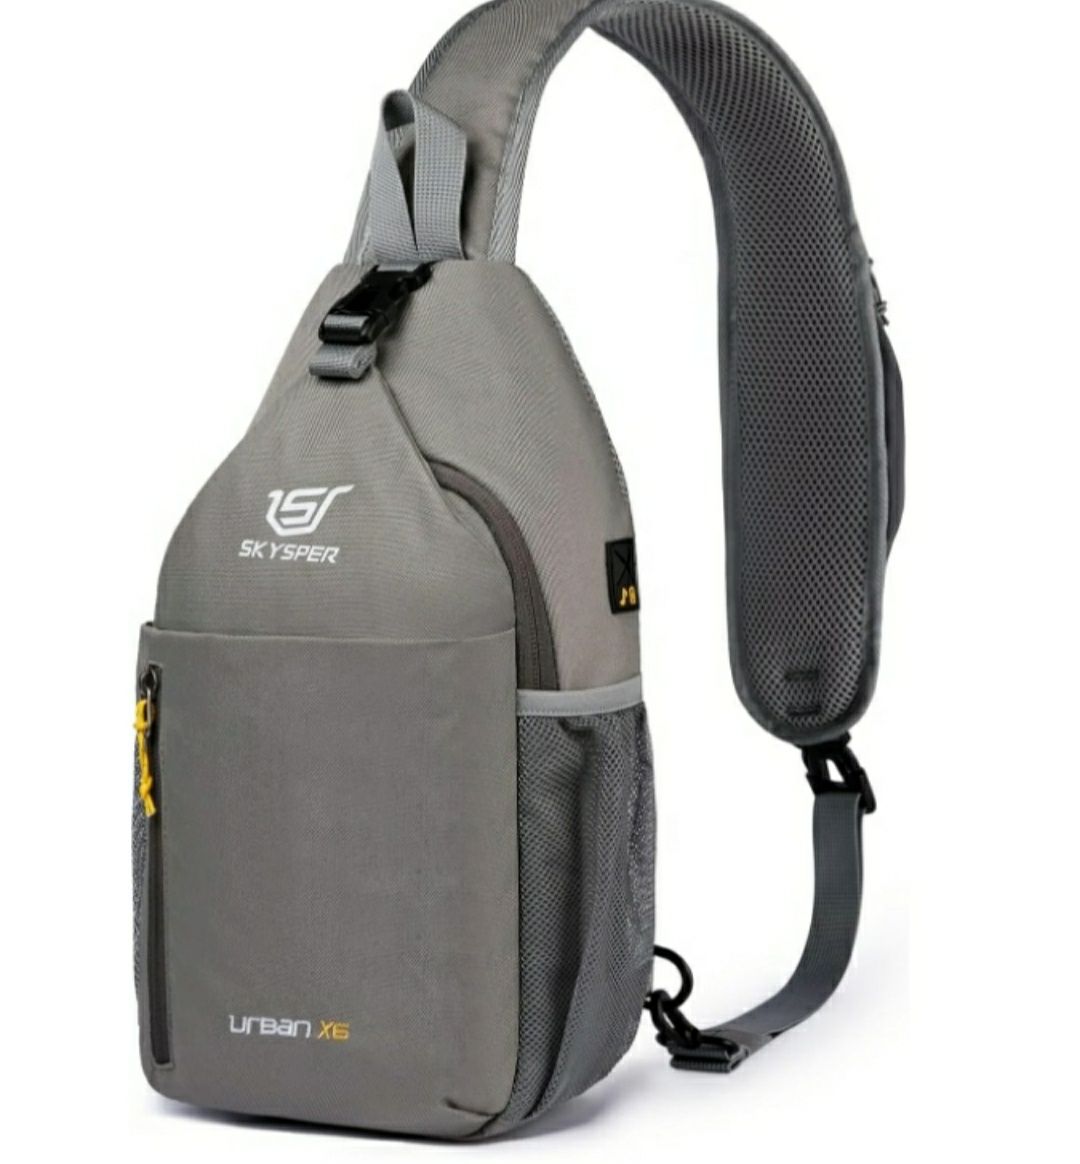 Plecak SKYSPER URBAN X6 do 20 l odcienie szarości